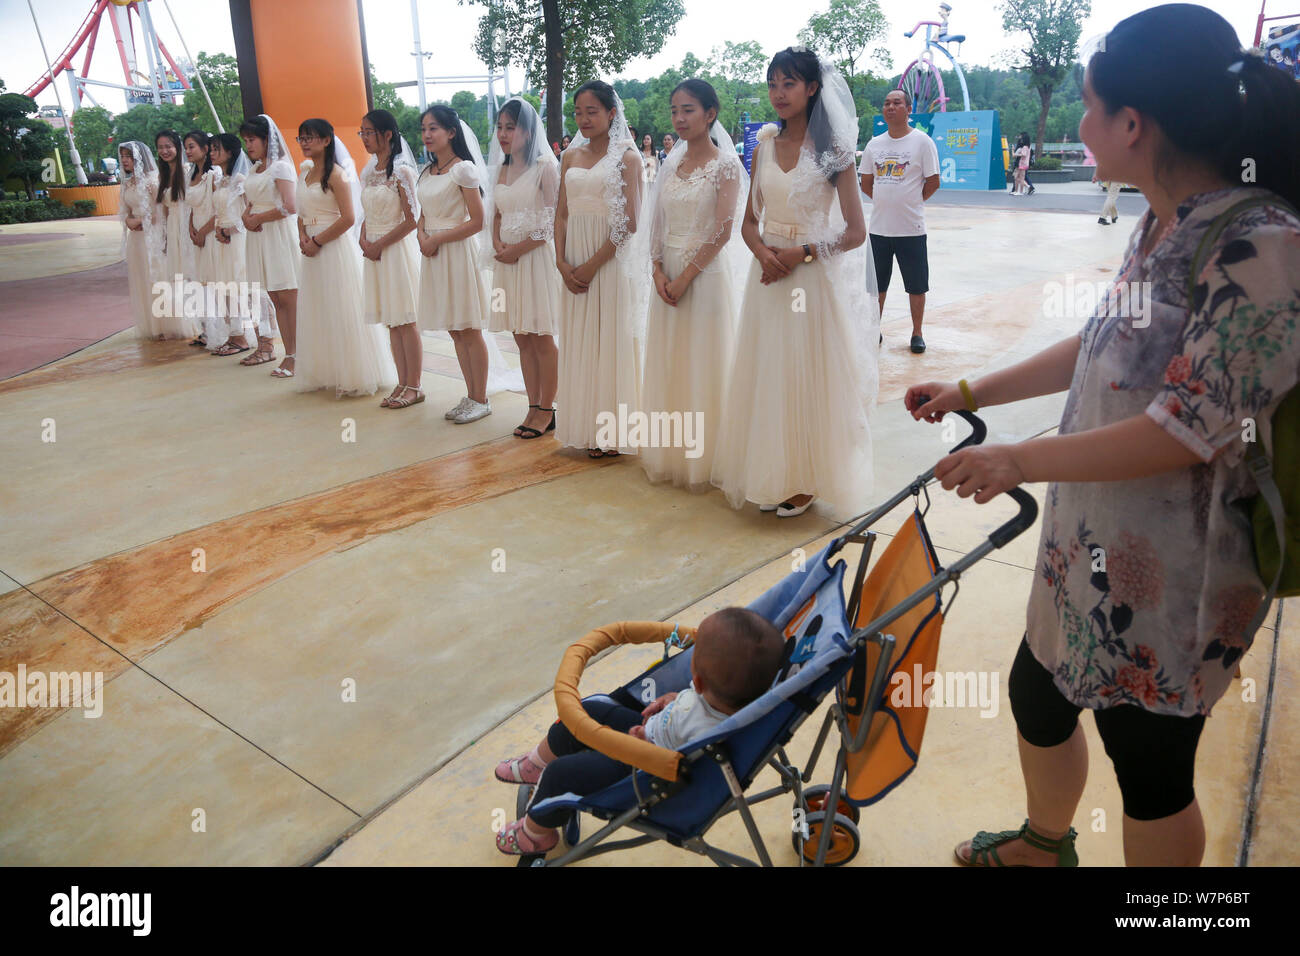 Bräute Brautkleider sind eine Gruppe Trauung für Paare der schulfreund Liebhaber aus einer Universität Wuhan Happy Valley Amusement Park gesehen Stockfoto